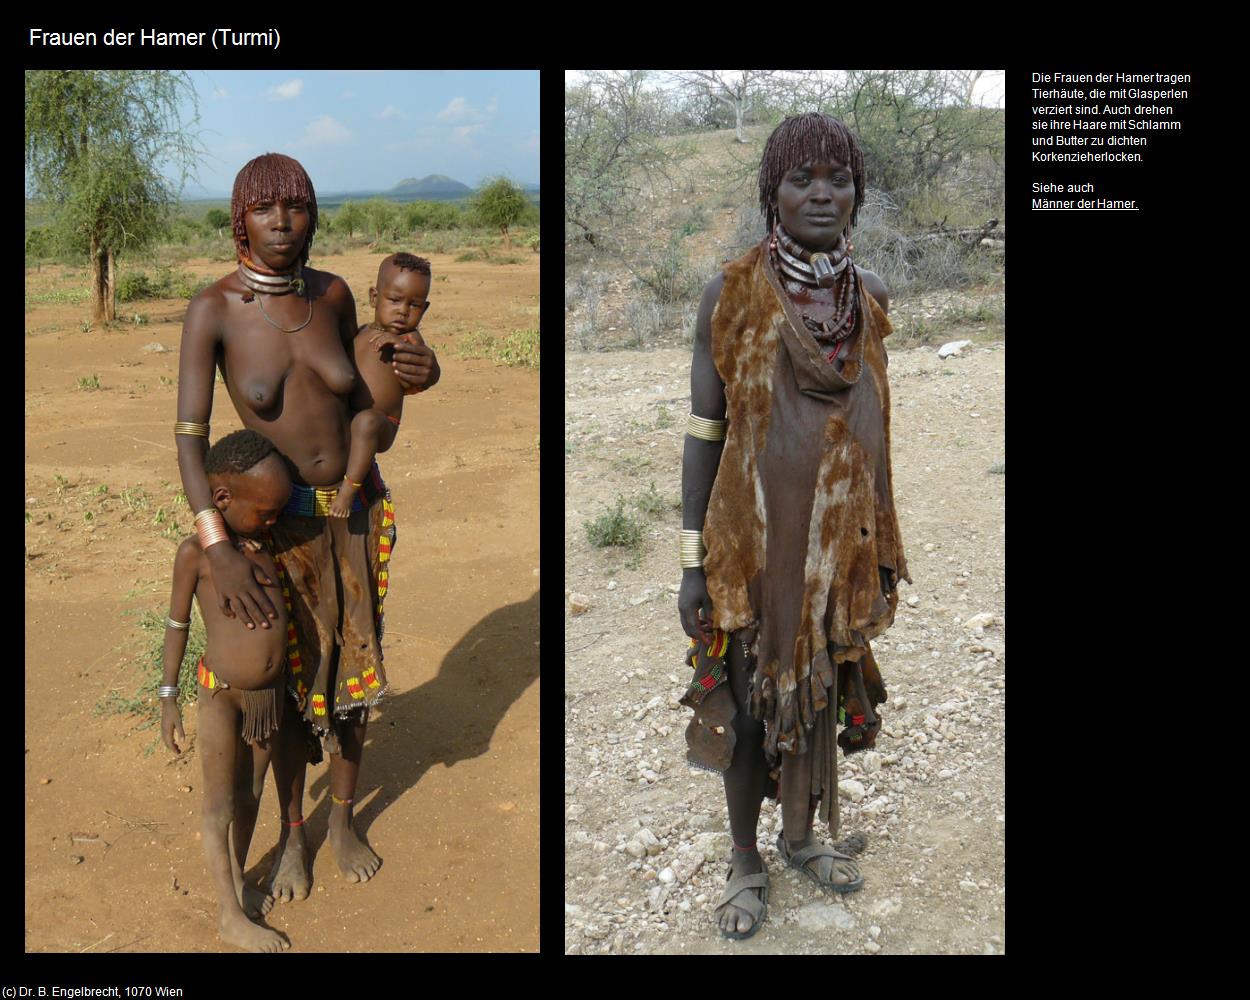 Frauen der Hamer  (Turmi) in Äthiopien(c)B.Engelbrecht